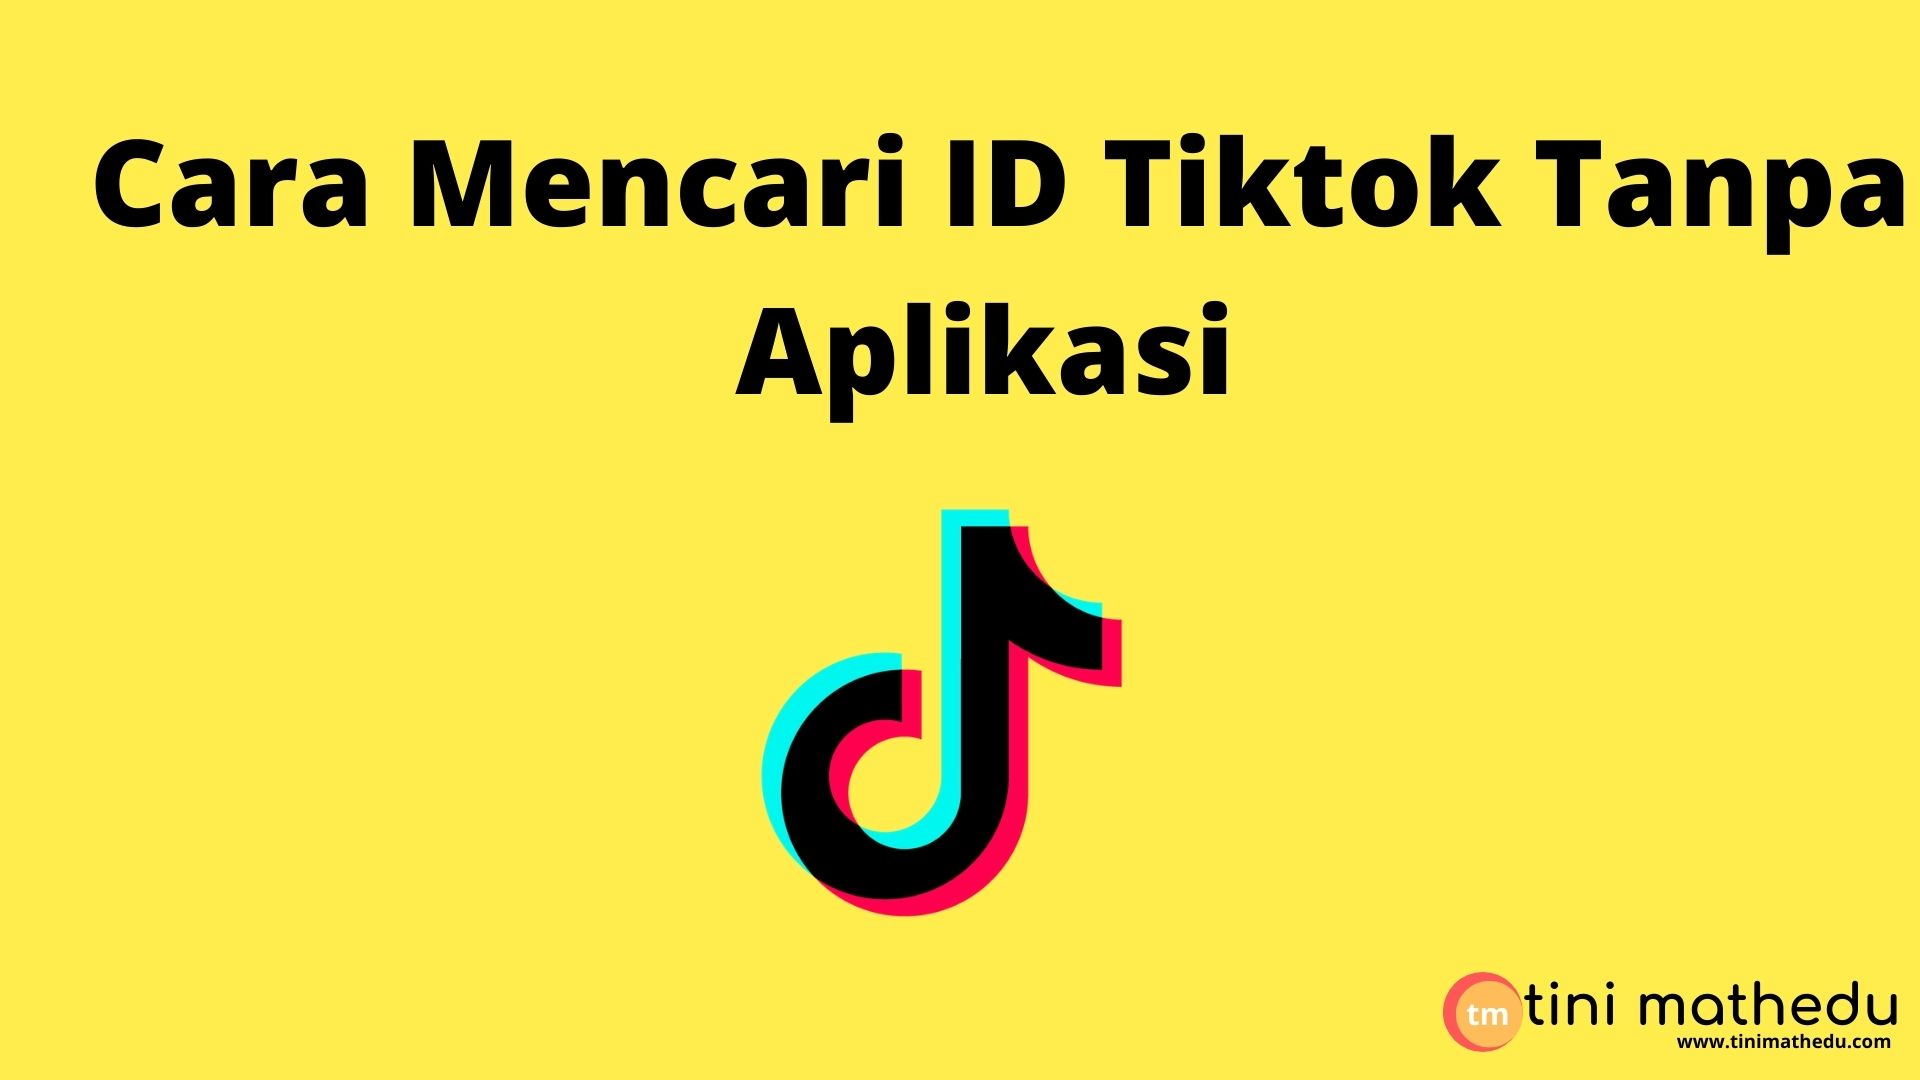 Cara mencari ID Tiktok tanpa aplikasi